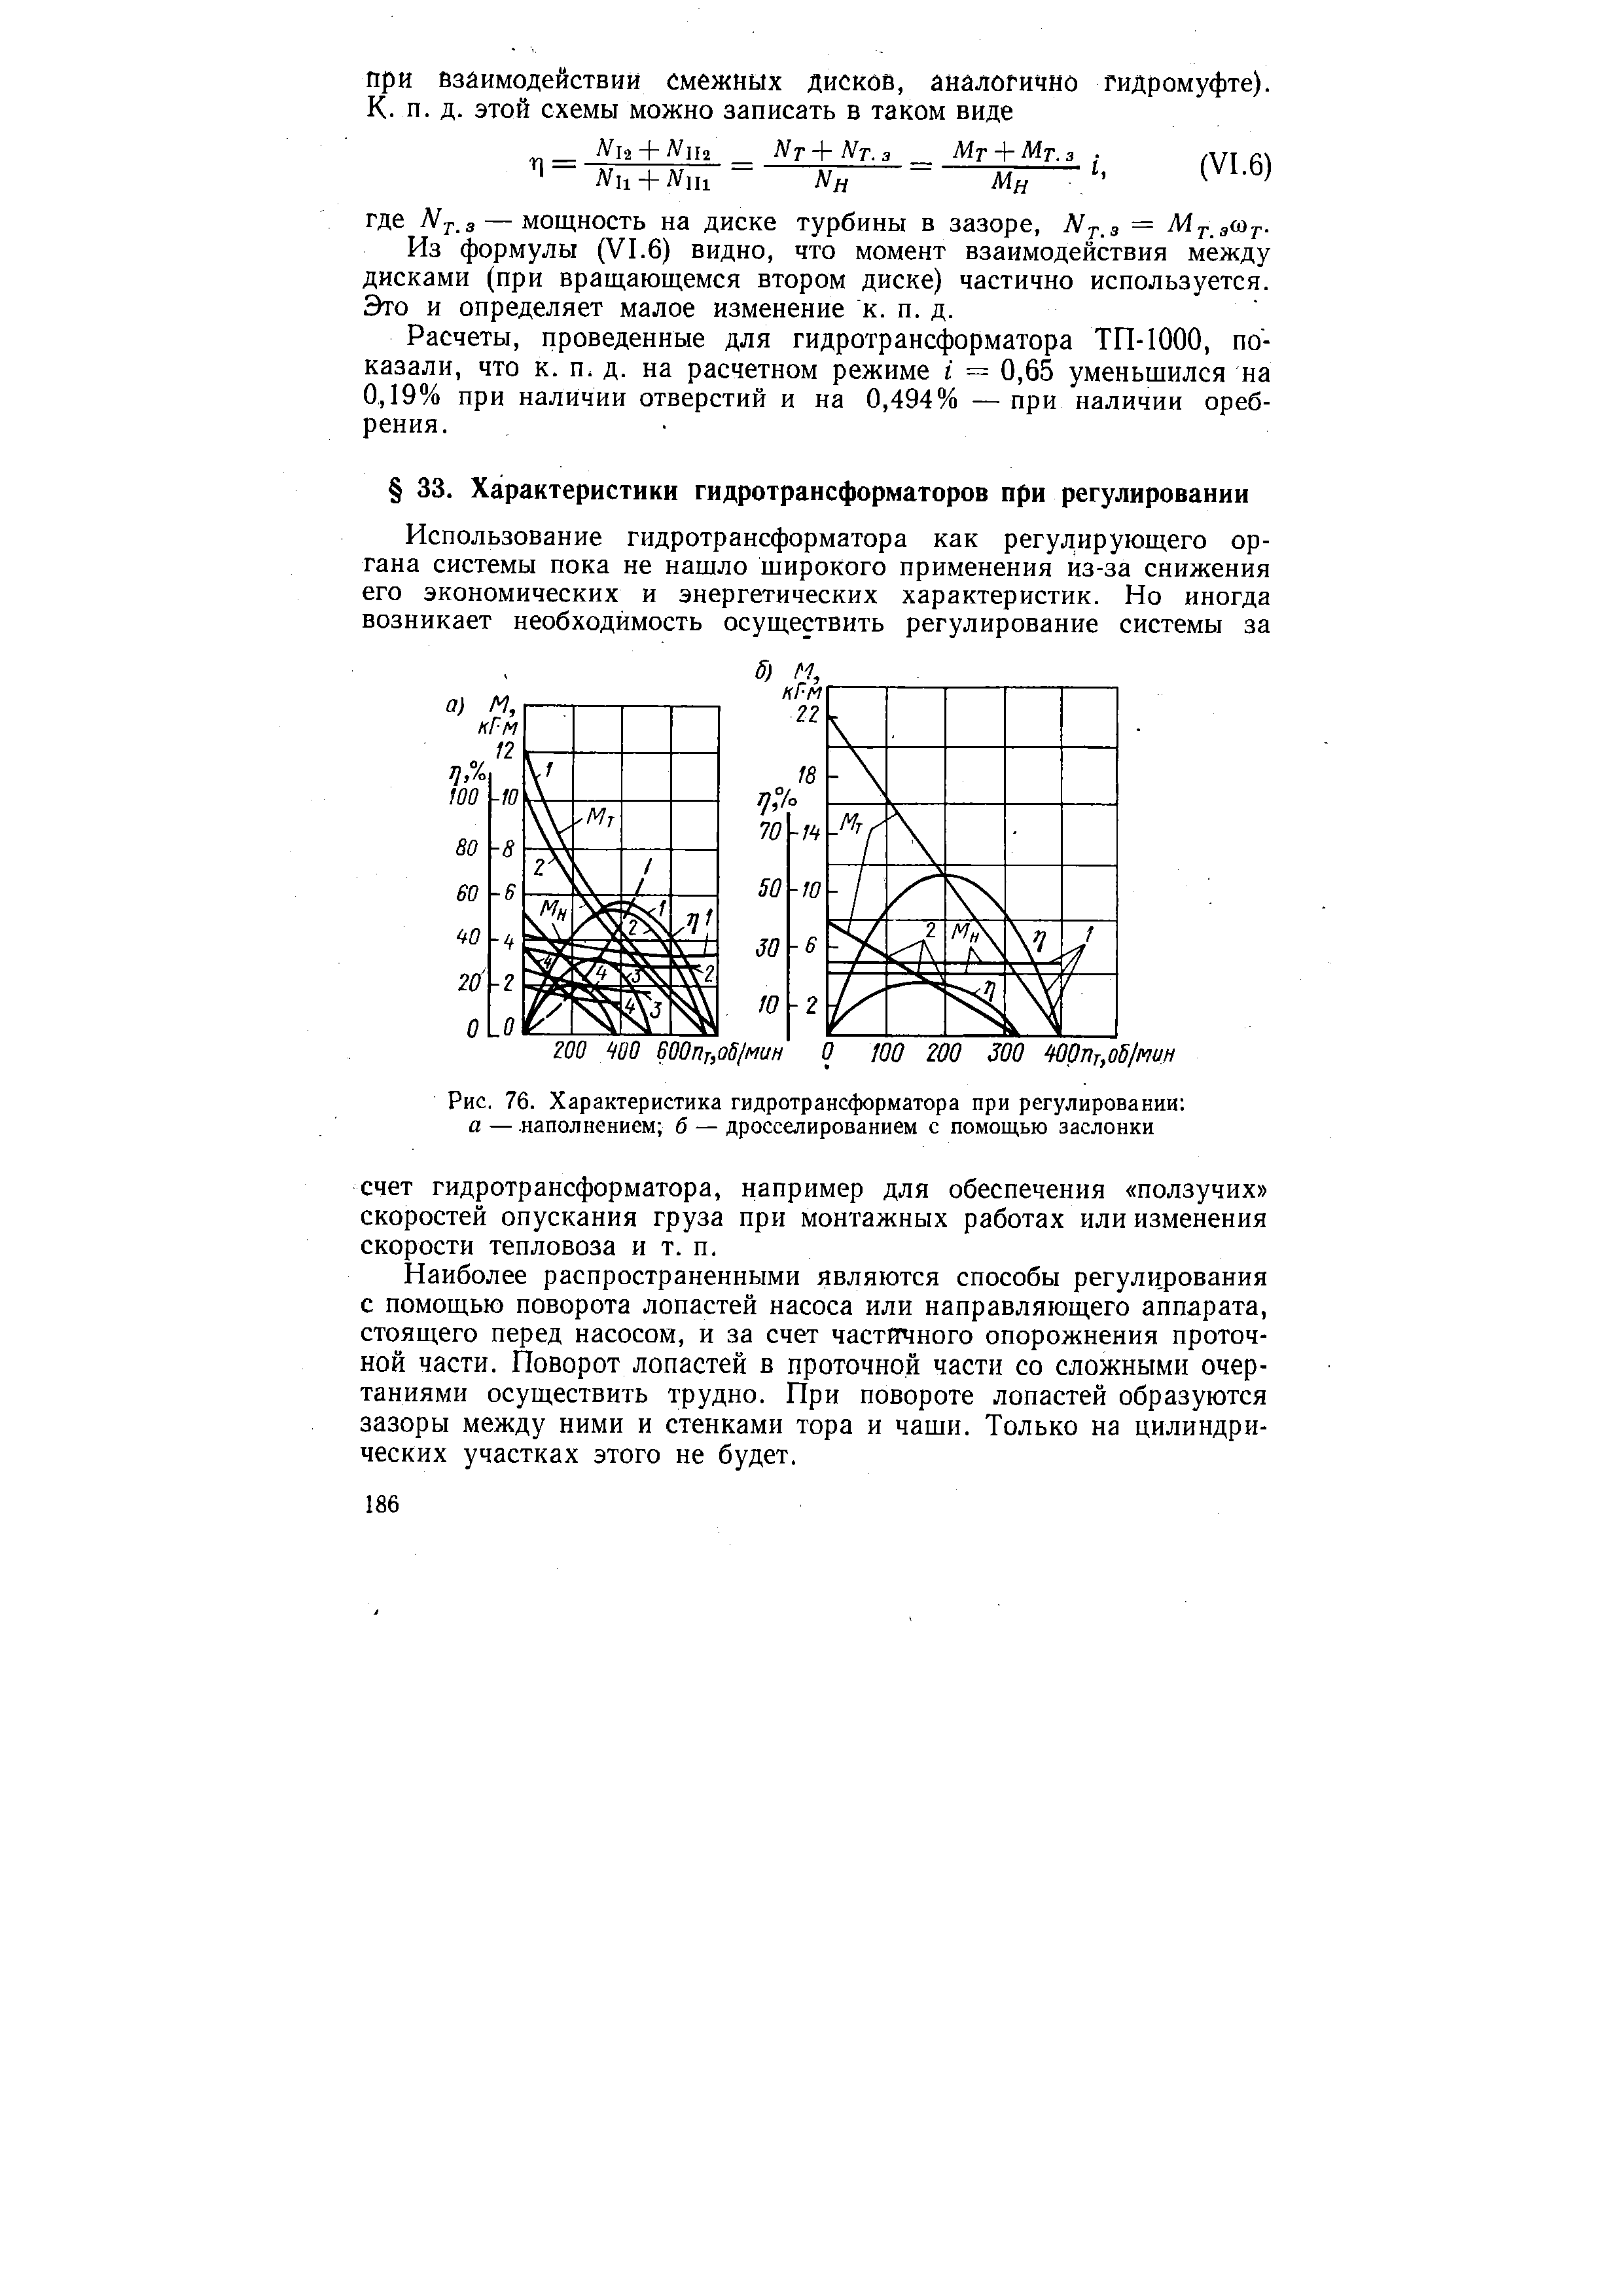 Рис. 76. Характеристика гидротрансформатора при регулировании а — наполнением б — дросселированием с помощью заслонки
